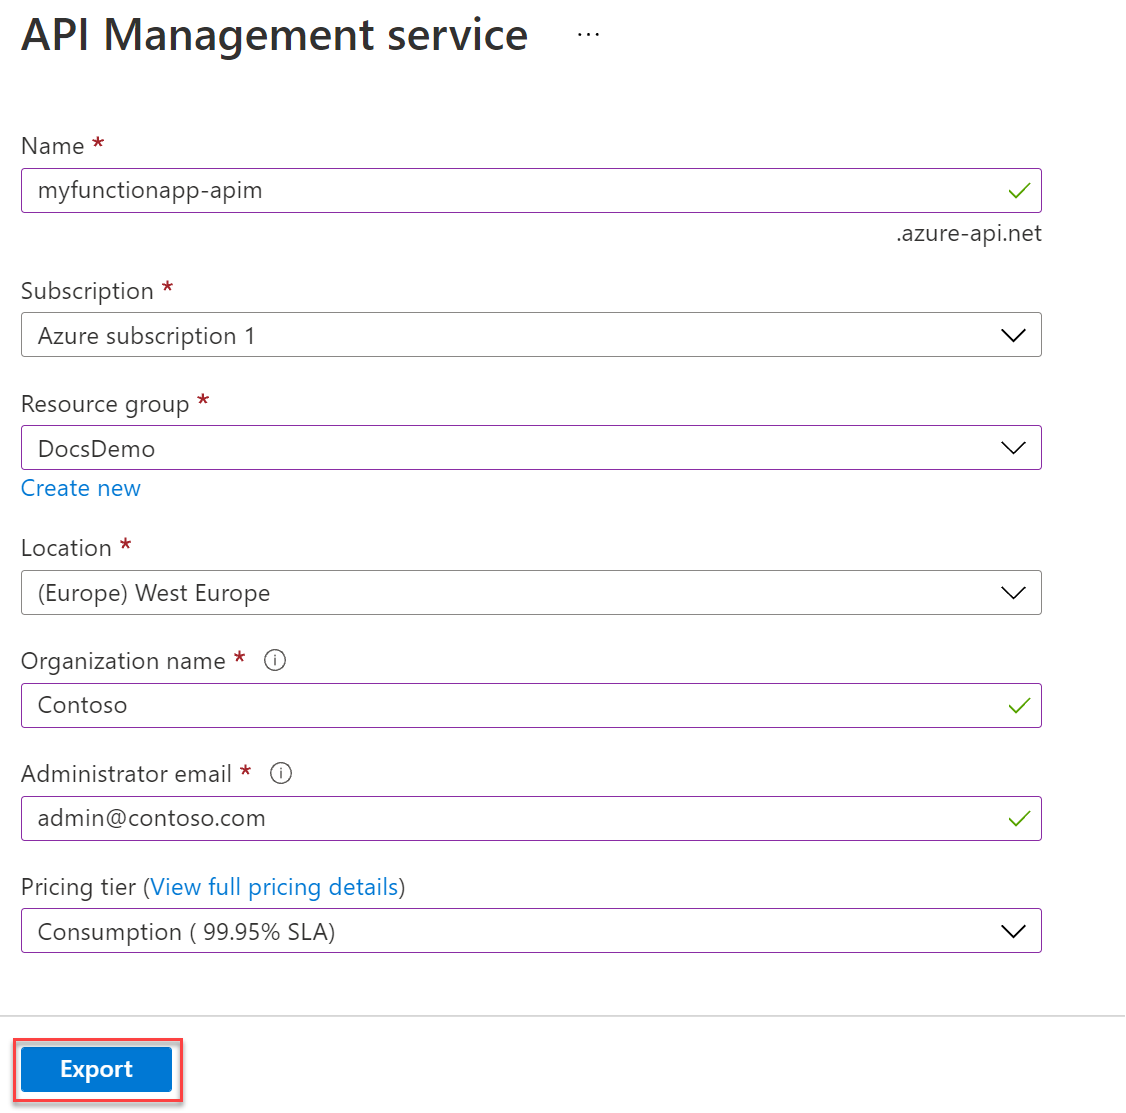 Új API Management szolgáltatás létrehozása